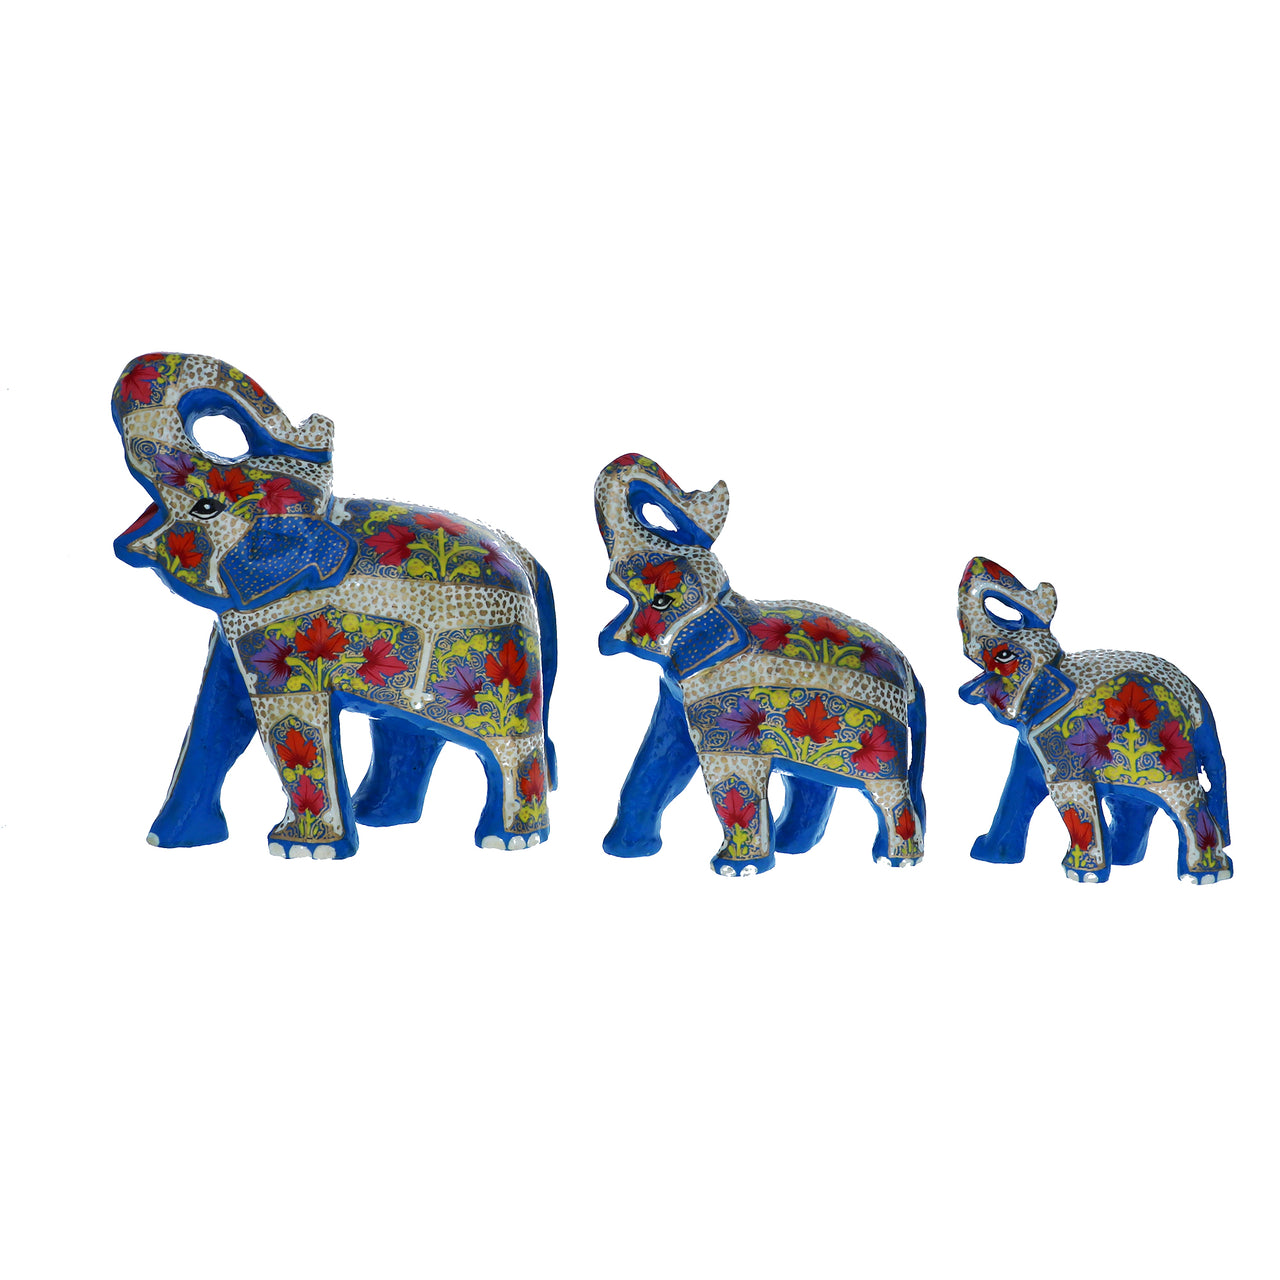 Set of 3 Paper Mache Good Luck Elephant Sculptures